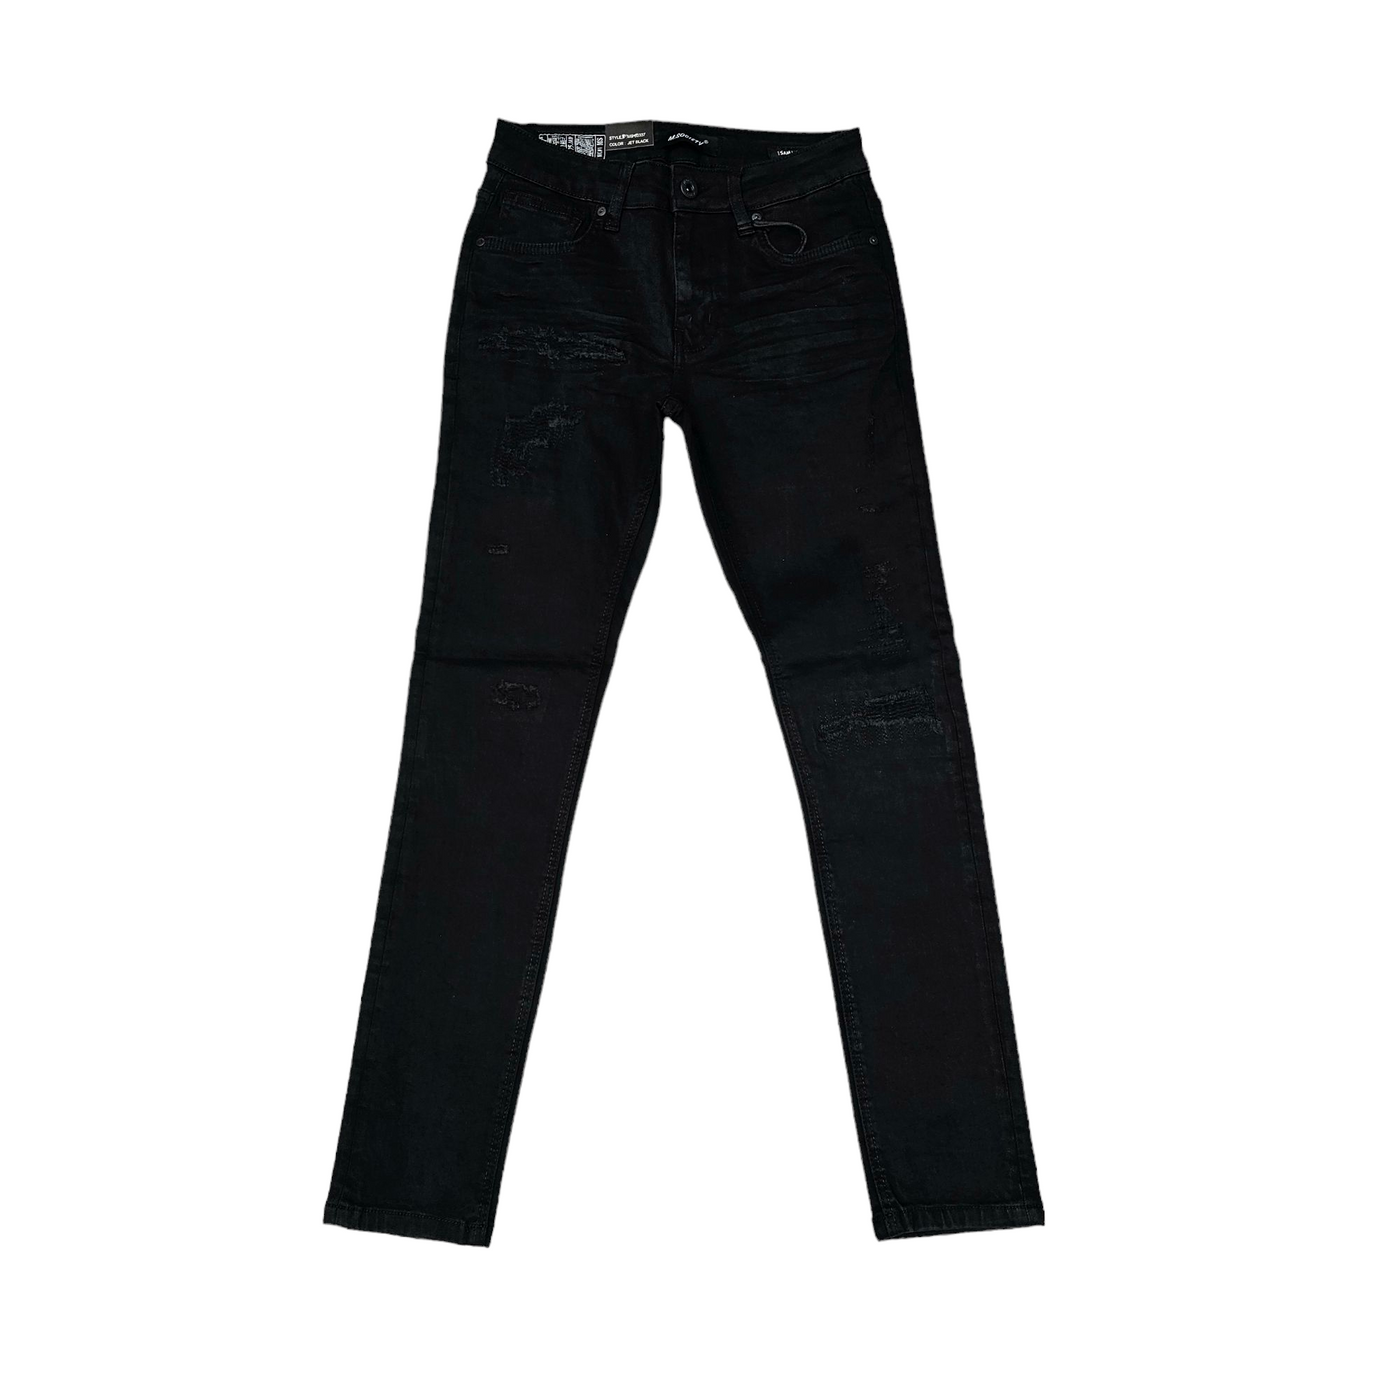 M. Society Men's Skinny Fit Jeans  Jet Black 80337